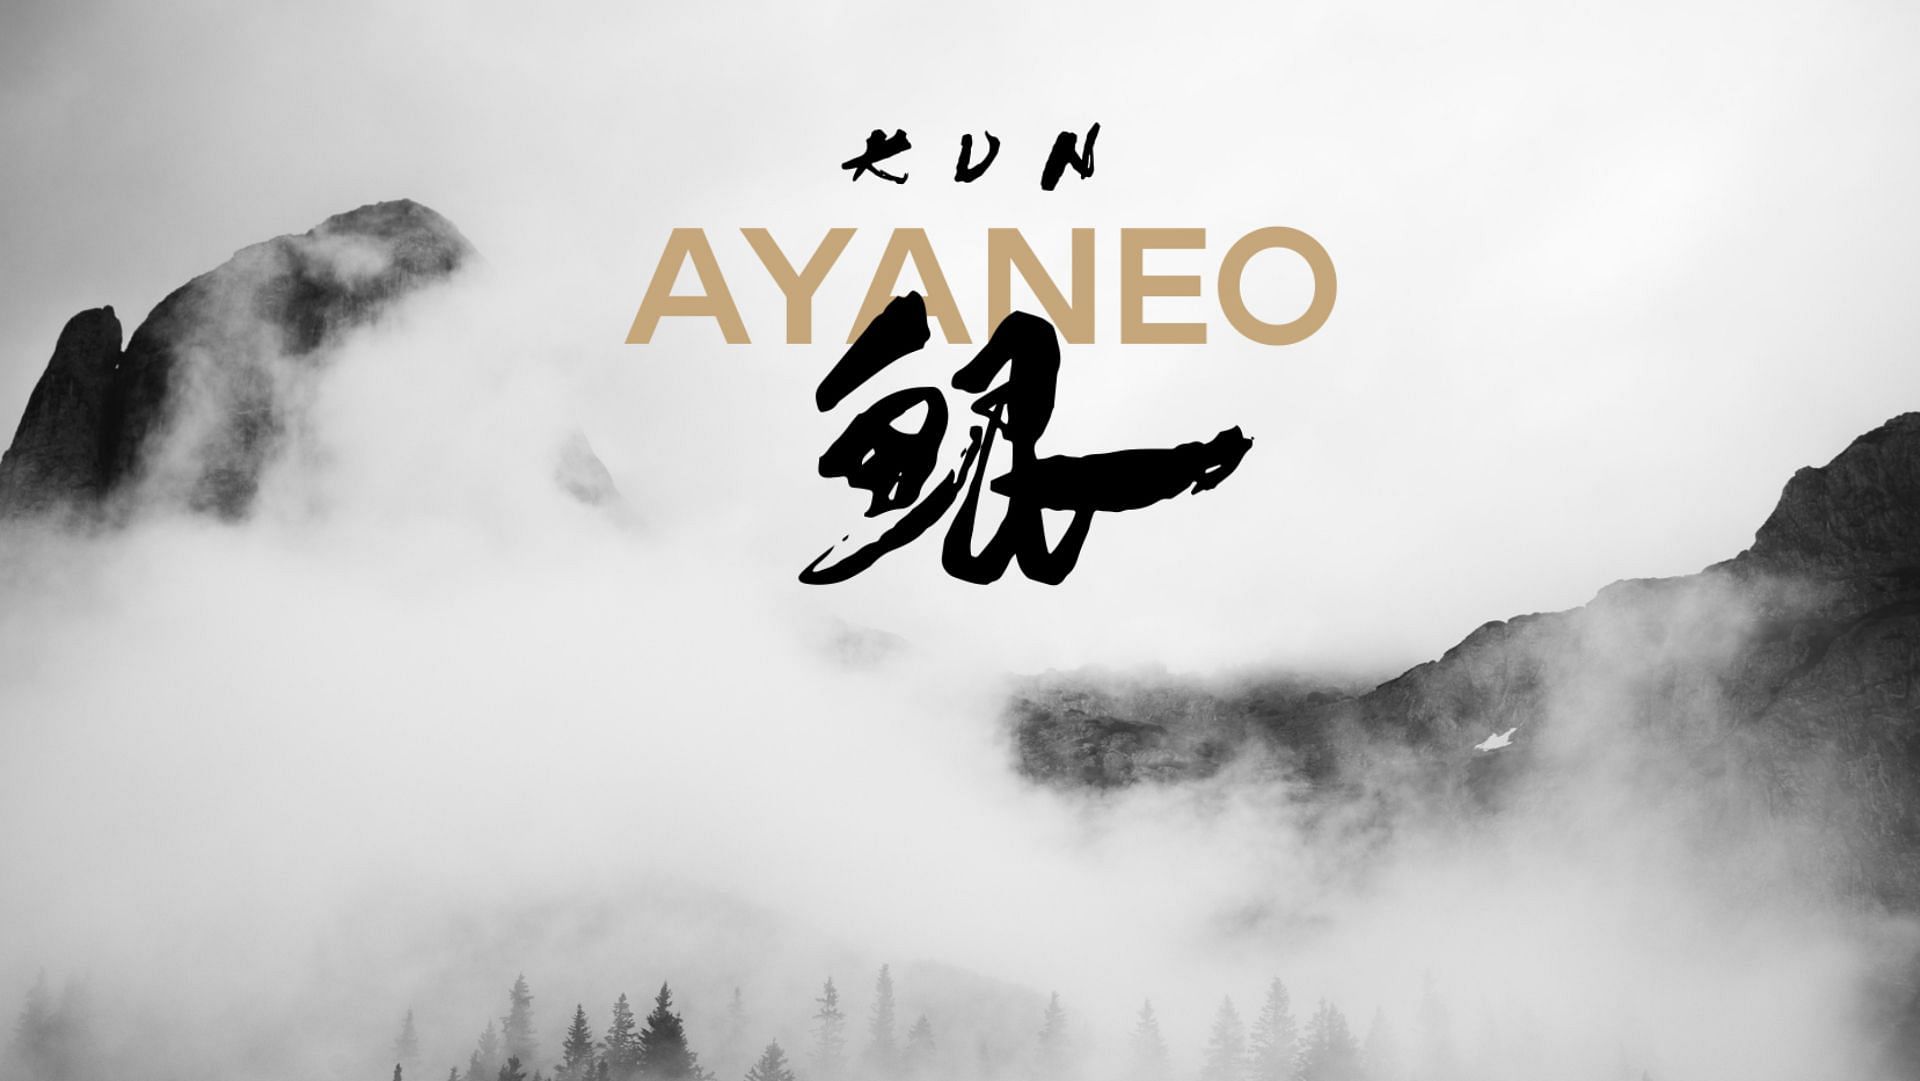 AYANEO Next II (Image via @AYANEO__/ twitter.com)